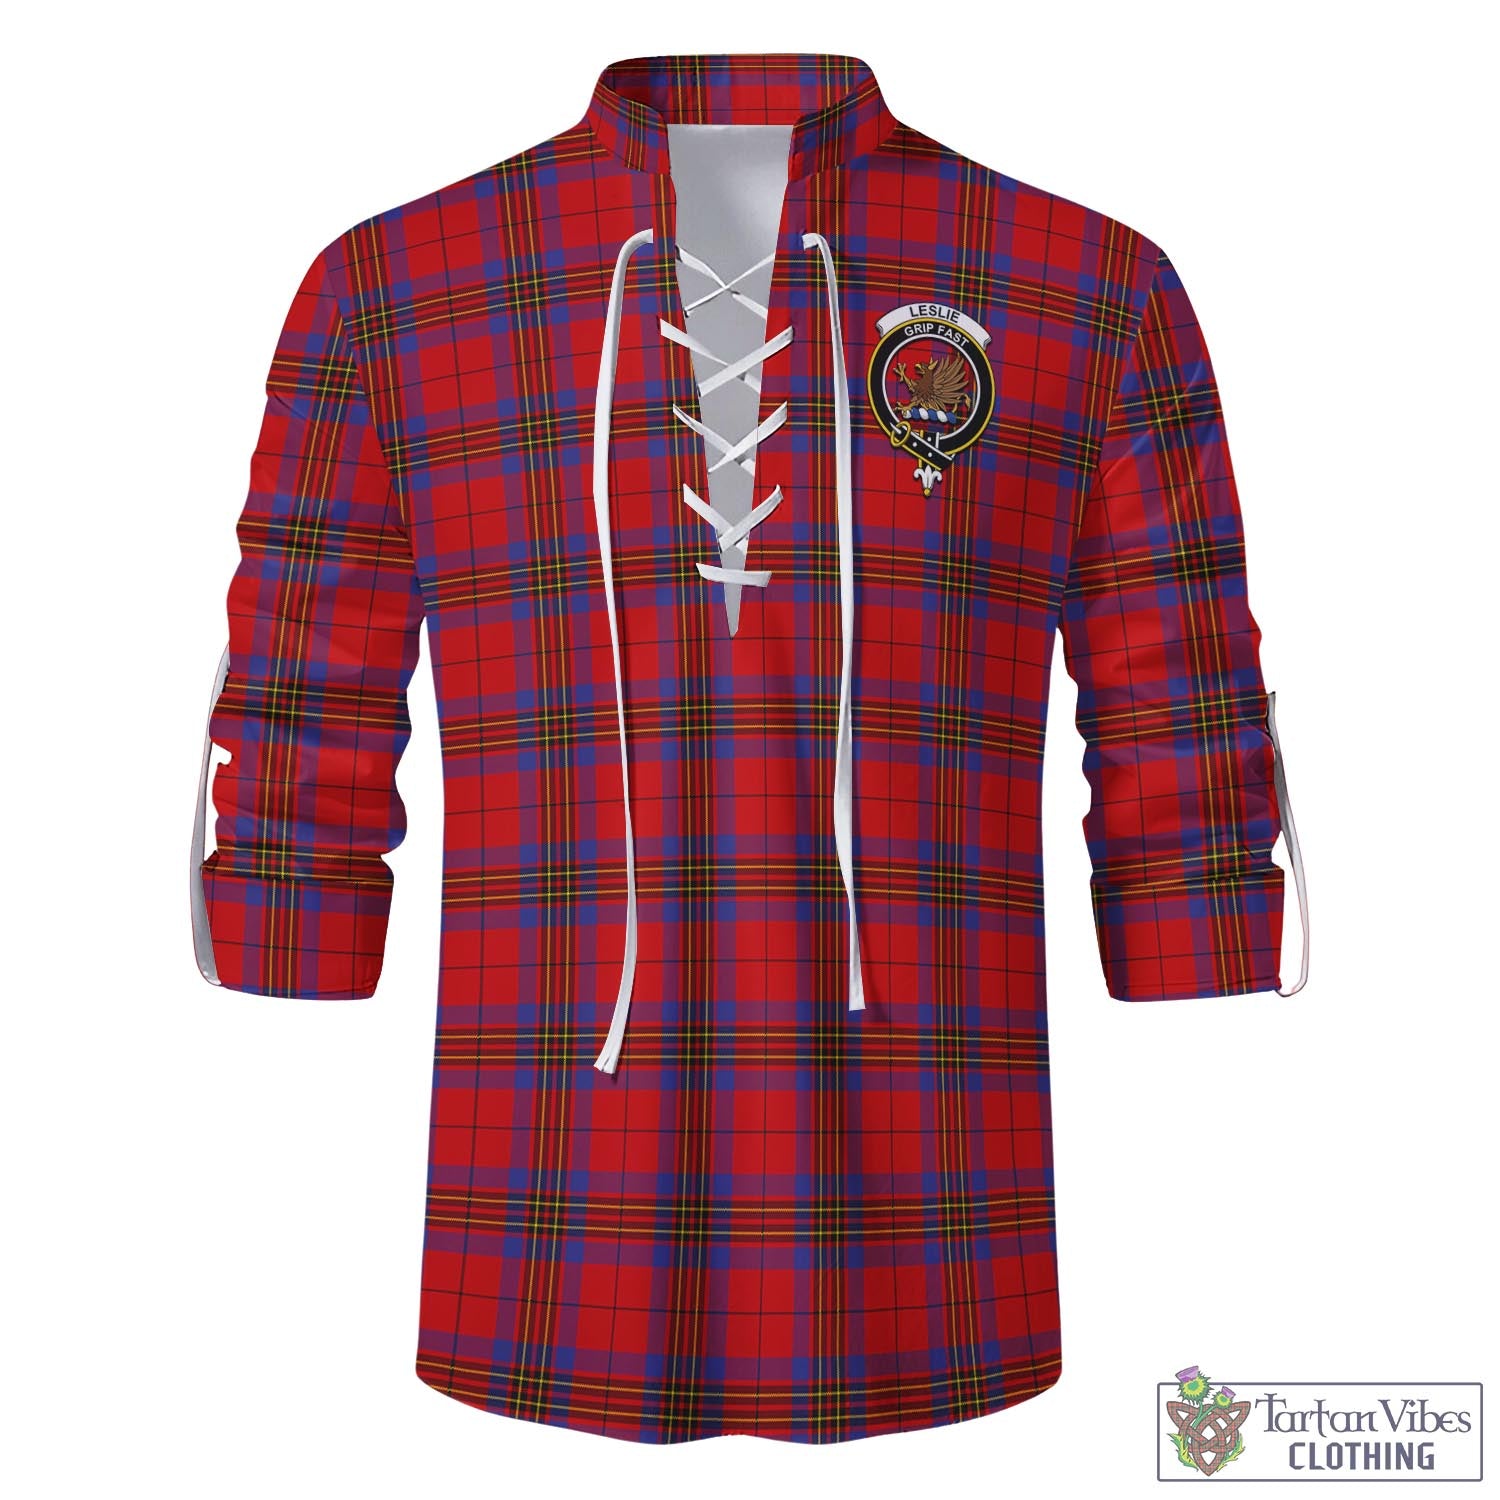 Tartan Vibes Clothing Leslie Modern Tartan Men's Scottish Traditional Jacobite Ghillie Kilt Shirt with Family Crest